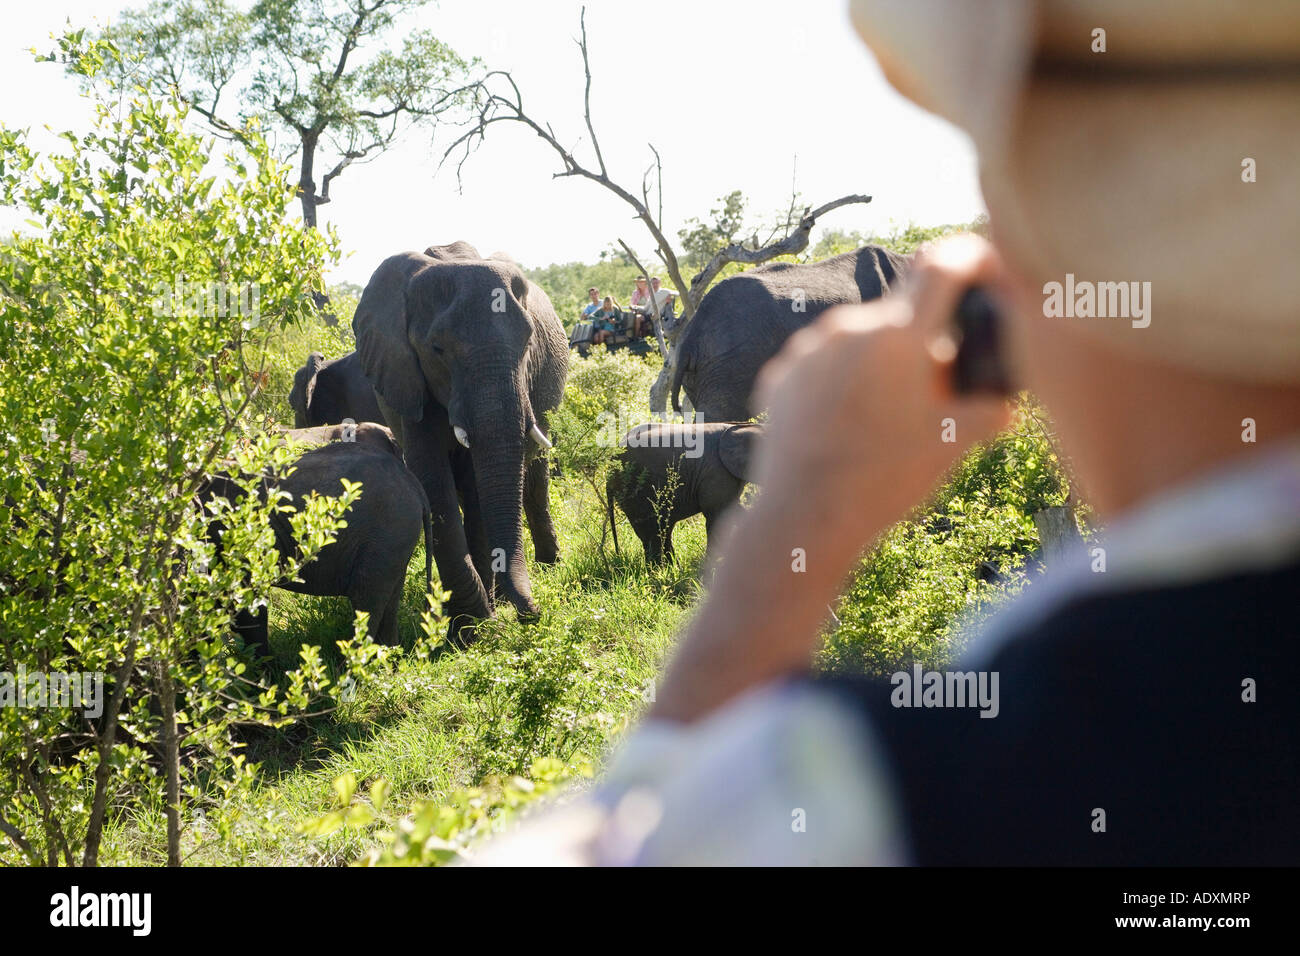 Adulto Uomo prendendo fotografia di gruppo di elefanti, vista posteriore Foto Stock